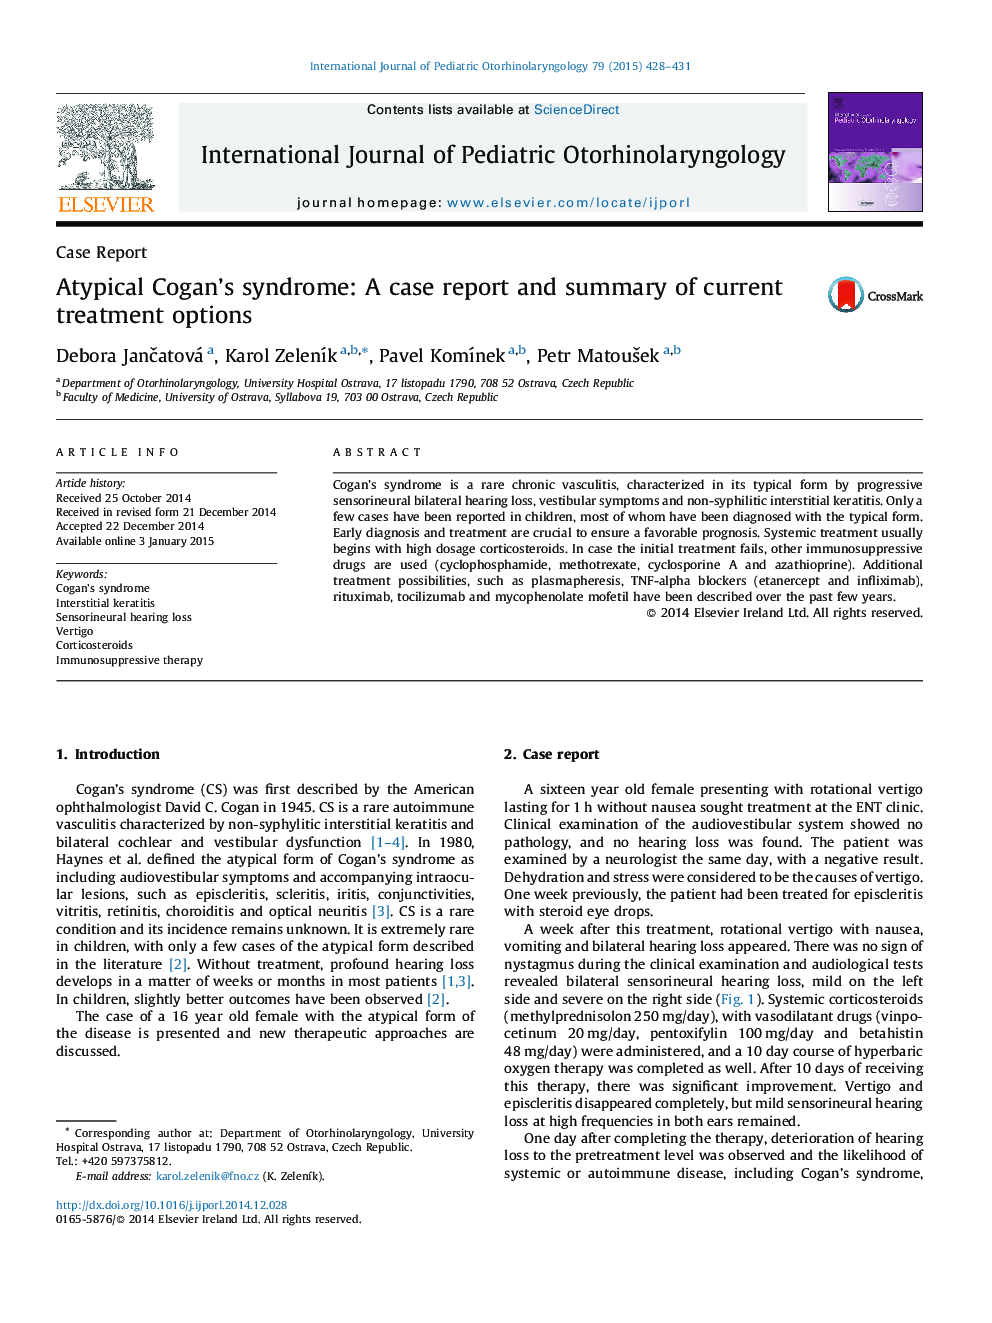 سندرم کوتان غیرمعمول: گزارش مورد و خلاصه ای از گزینه های درمانی کنونی 